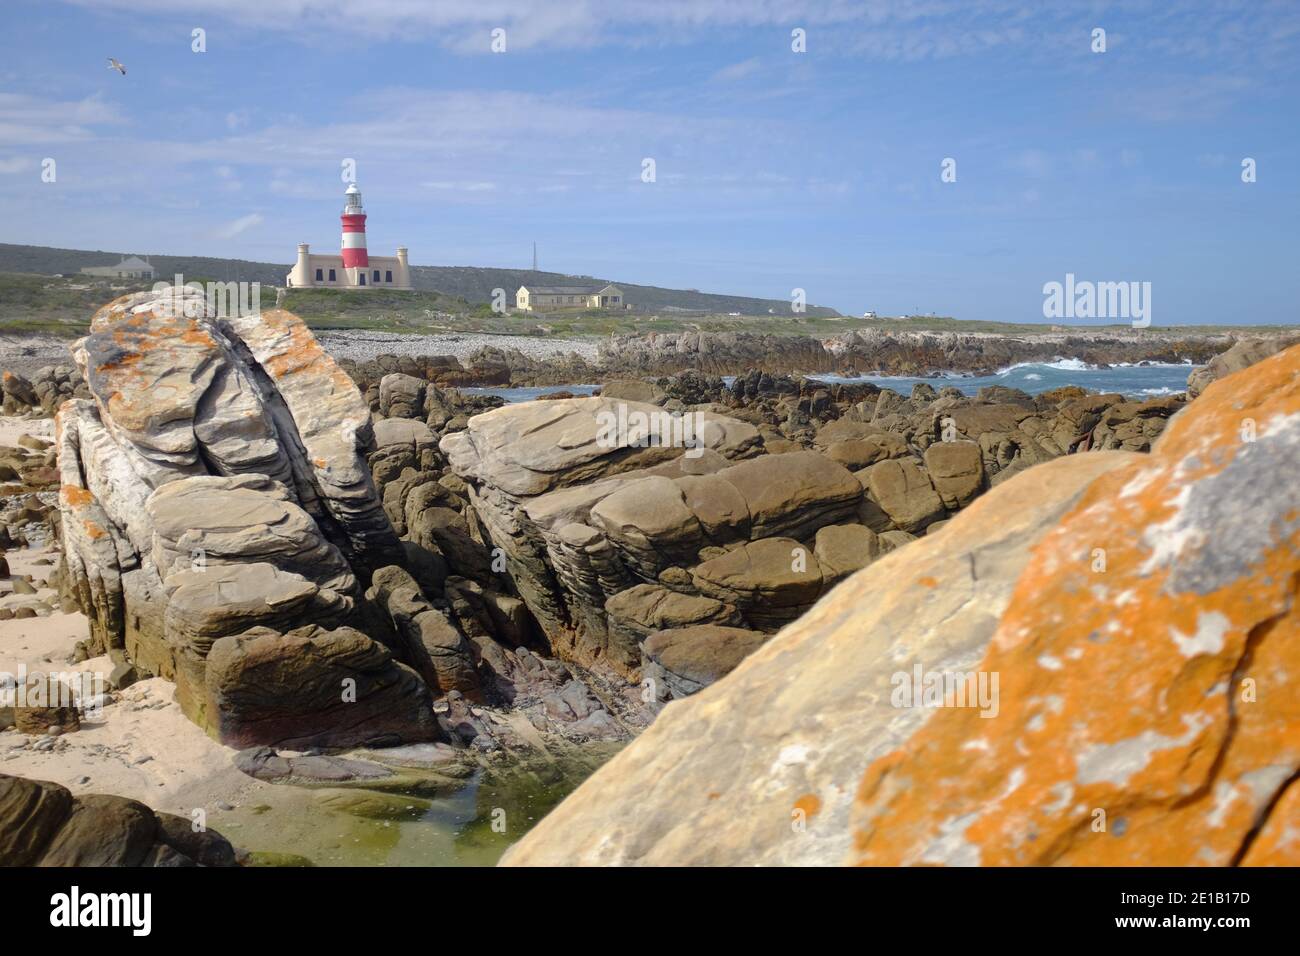 Afrique du Sud, Cape Agulhas, Cape Town, où se rencontrent 2 océans : les océans Indial et Atlantique Banque D'Images